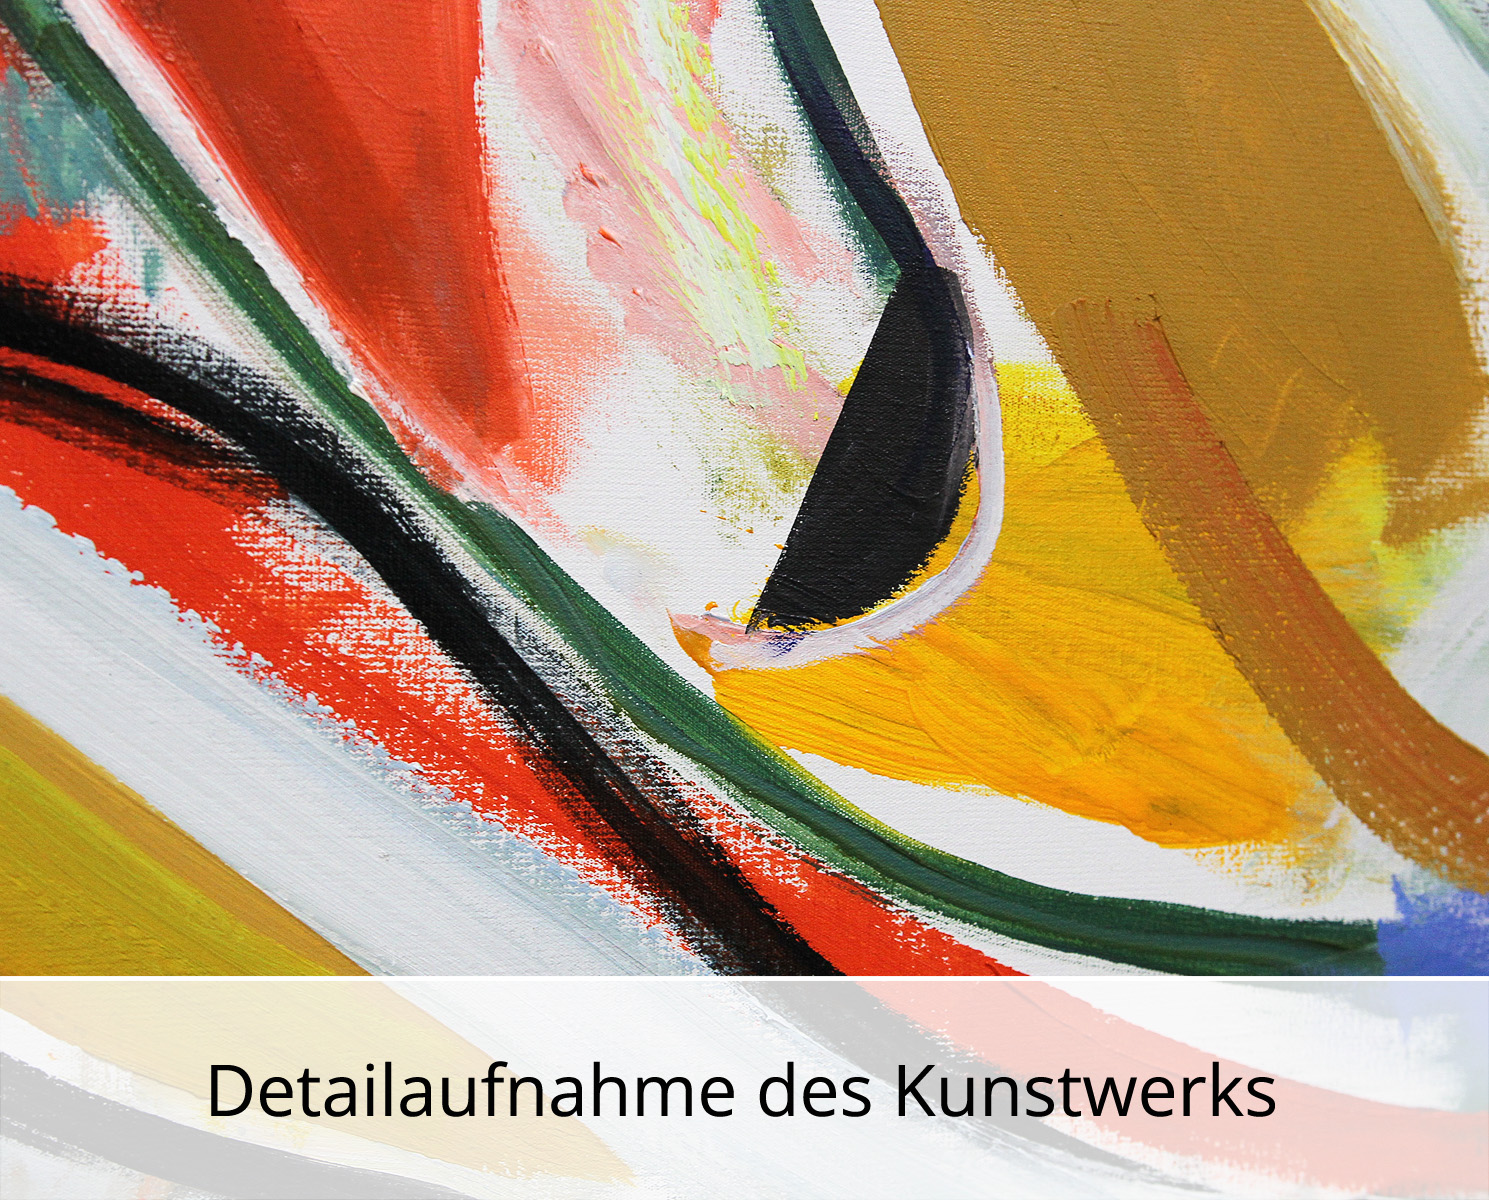 M. Cieśla: "Abstrakte Komposition im Studio", Original/Unikat, Expressionistisches Ölgemälde